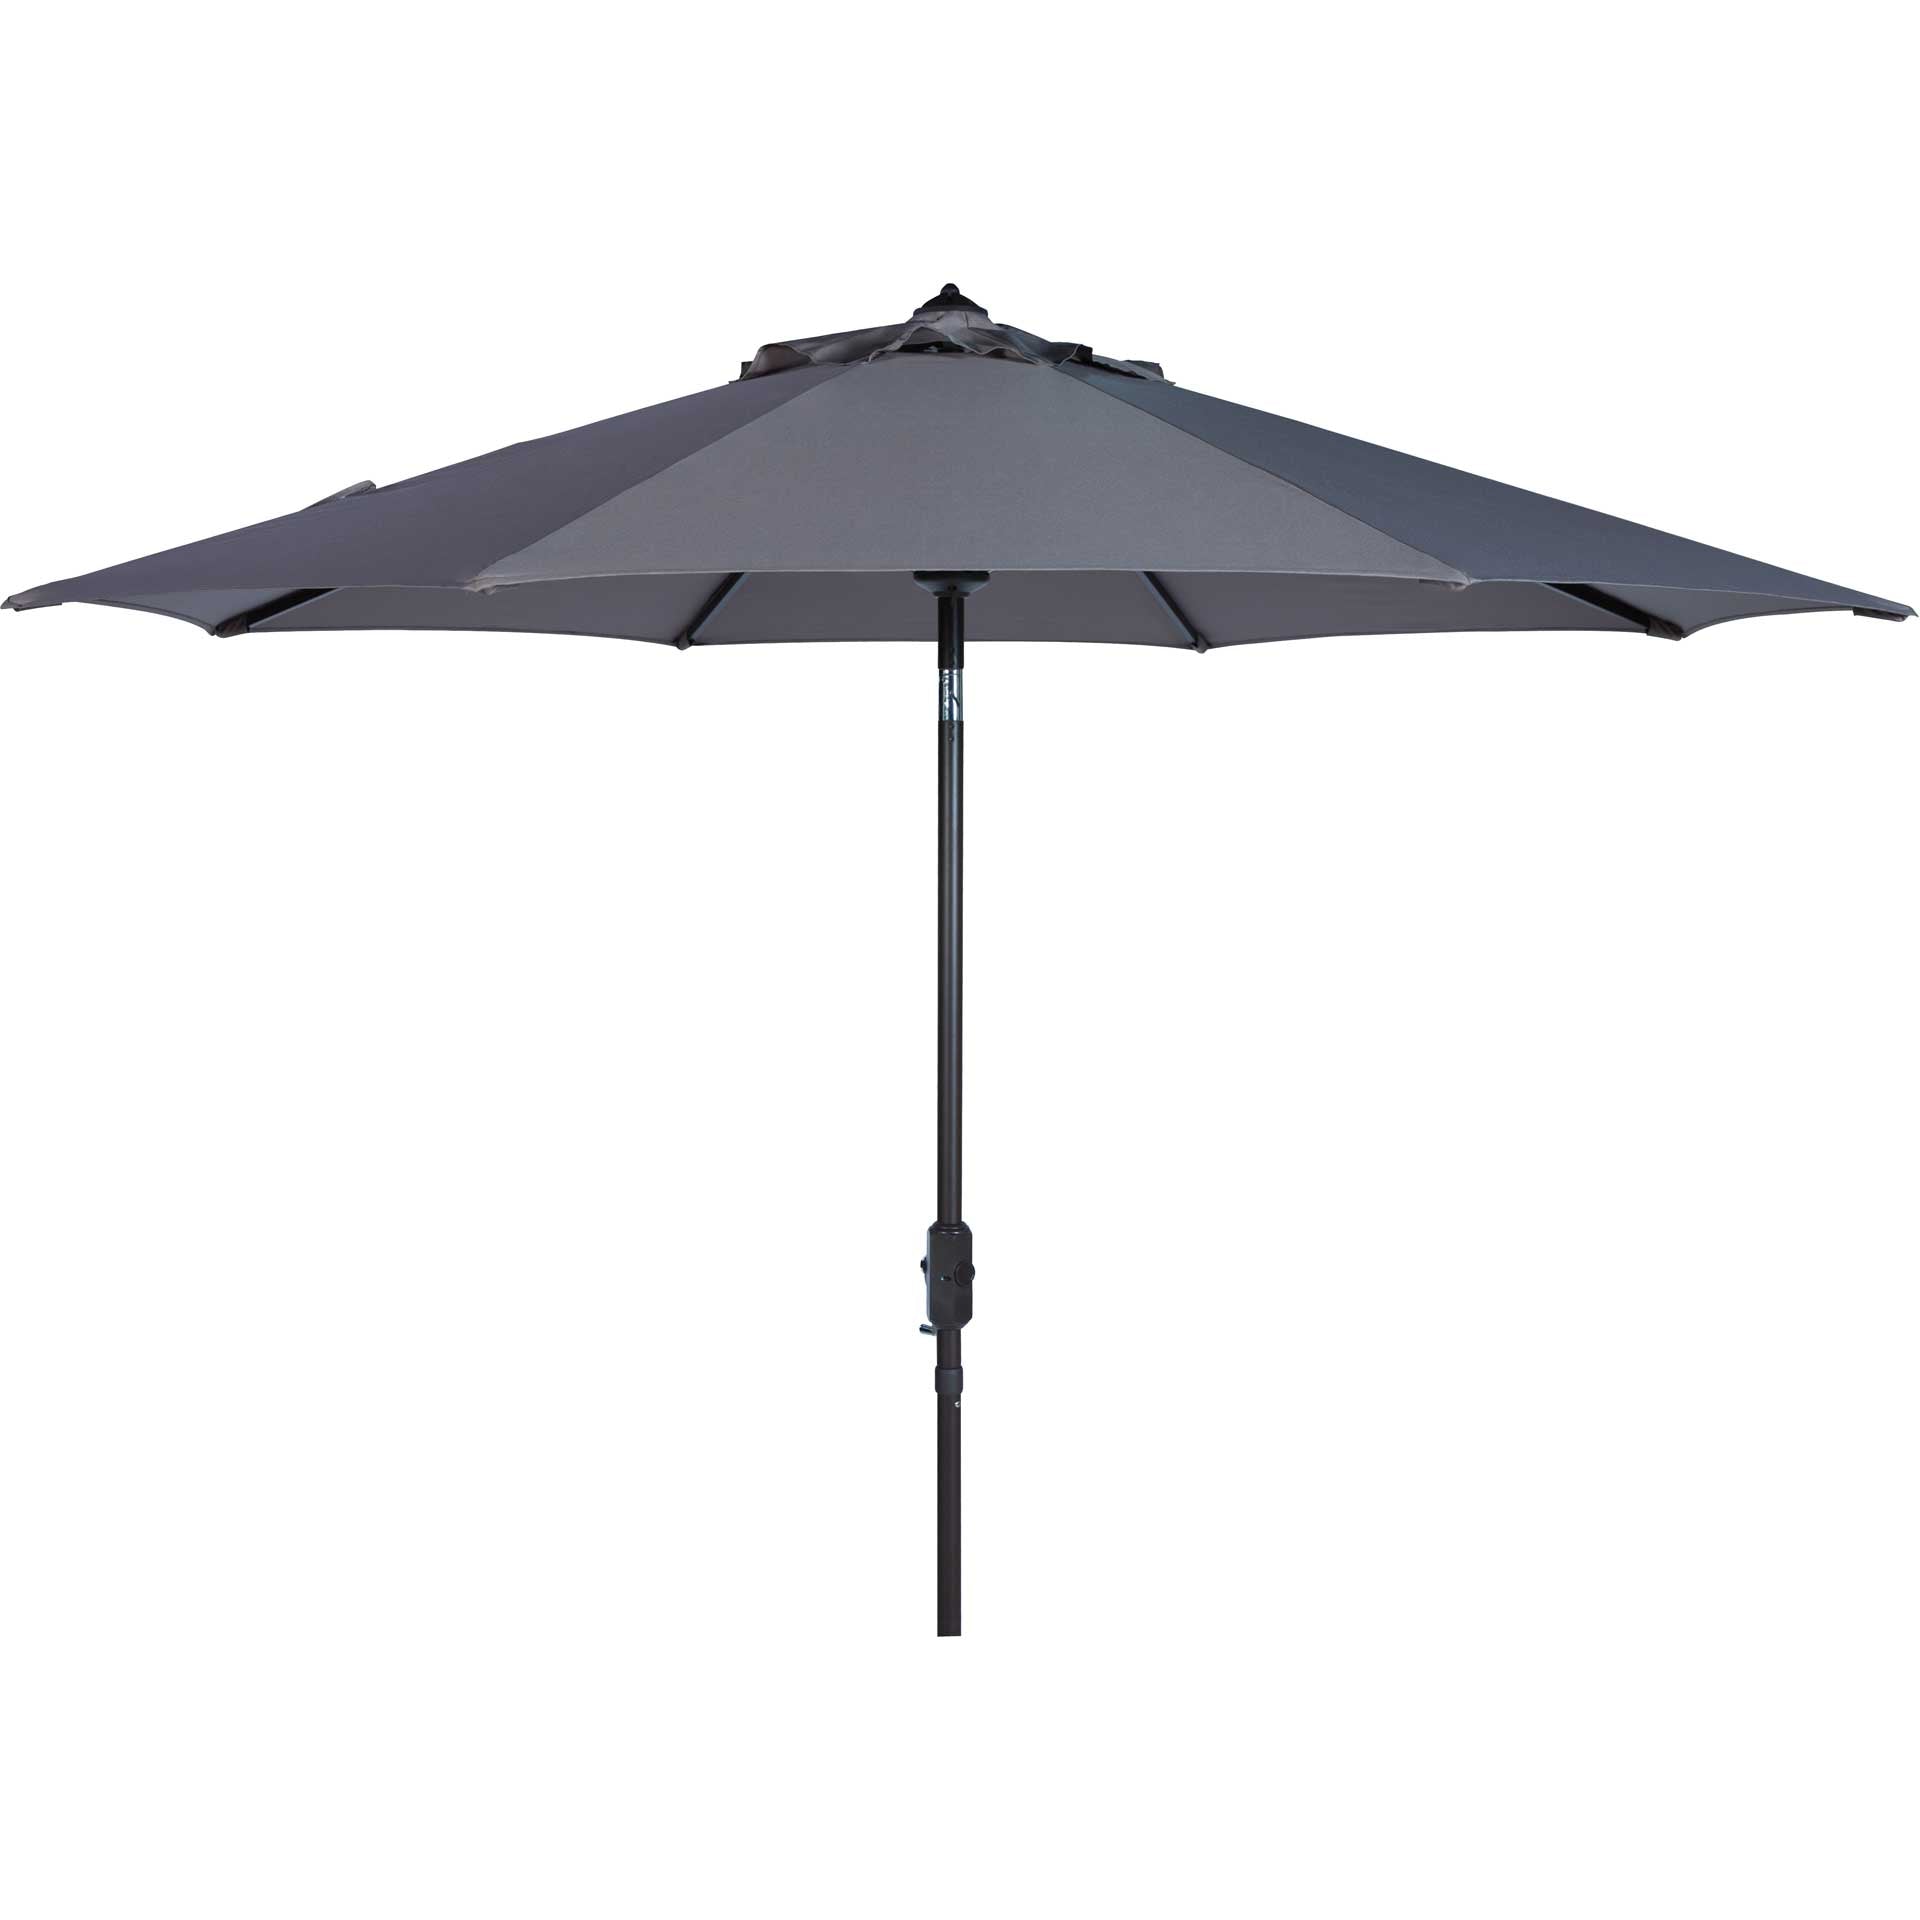 Orna Uv Resistant Auto Tilt Crank Umbrella Gray